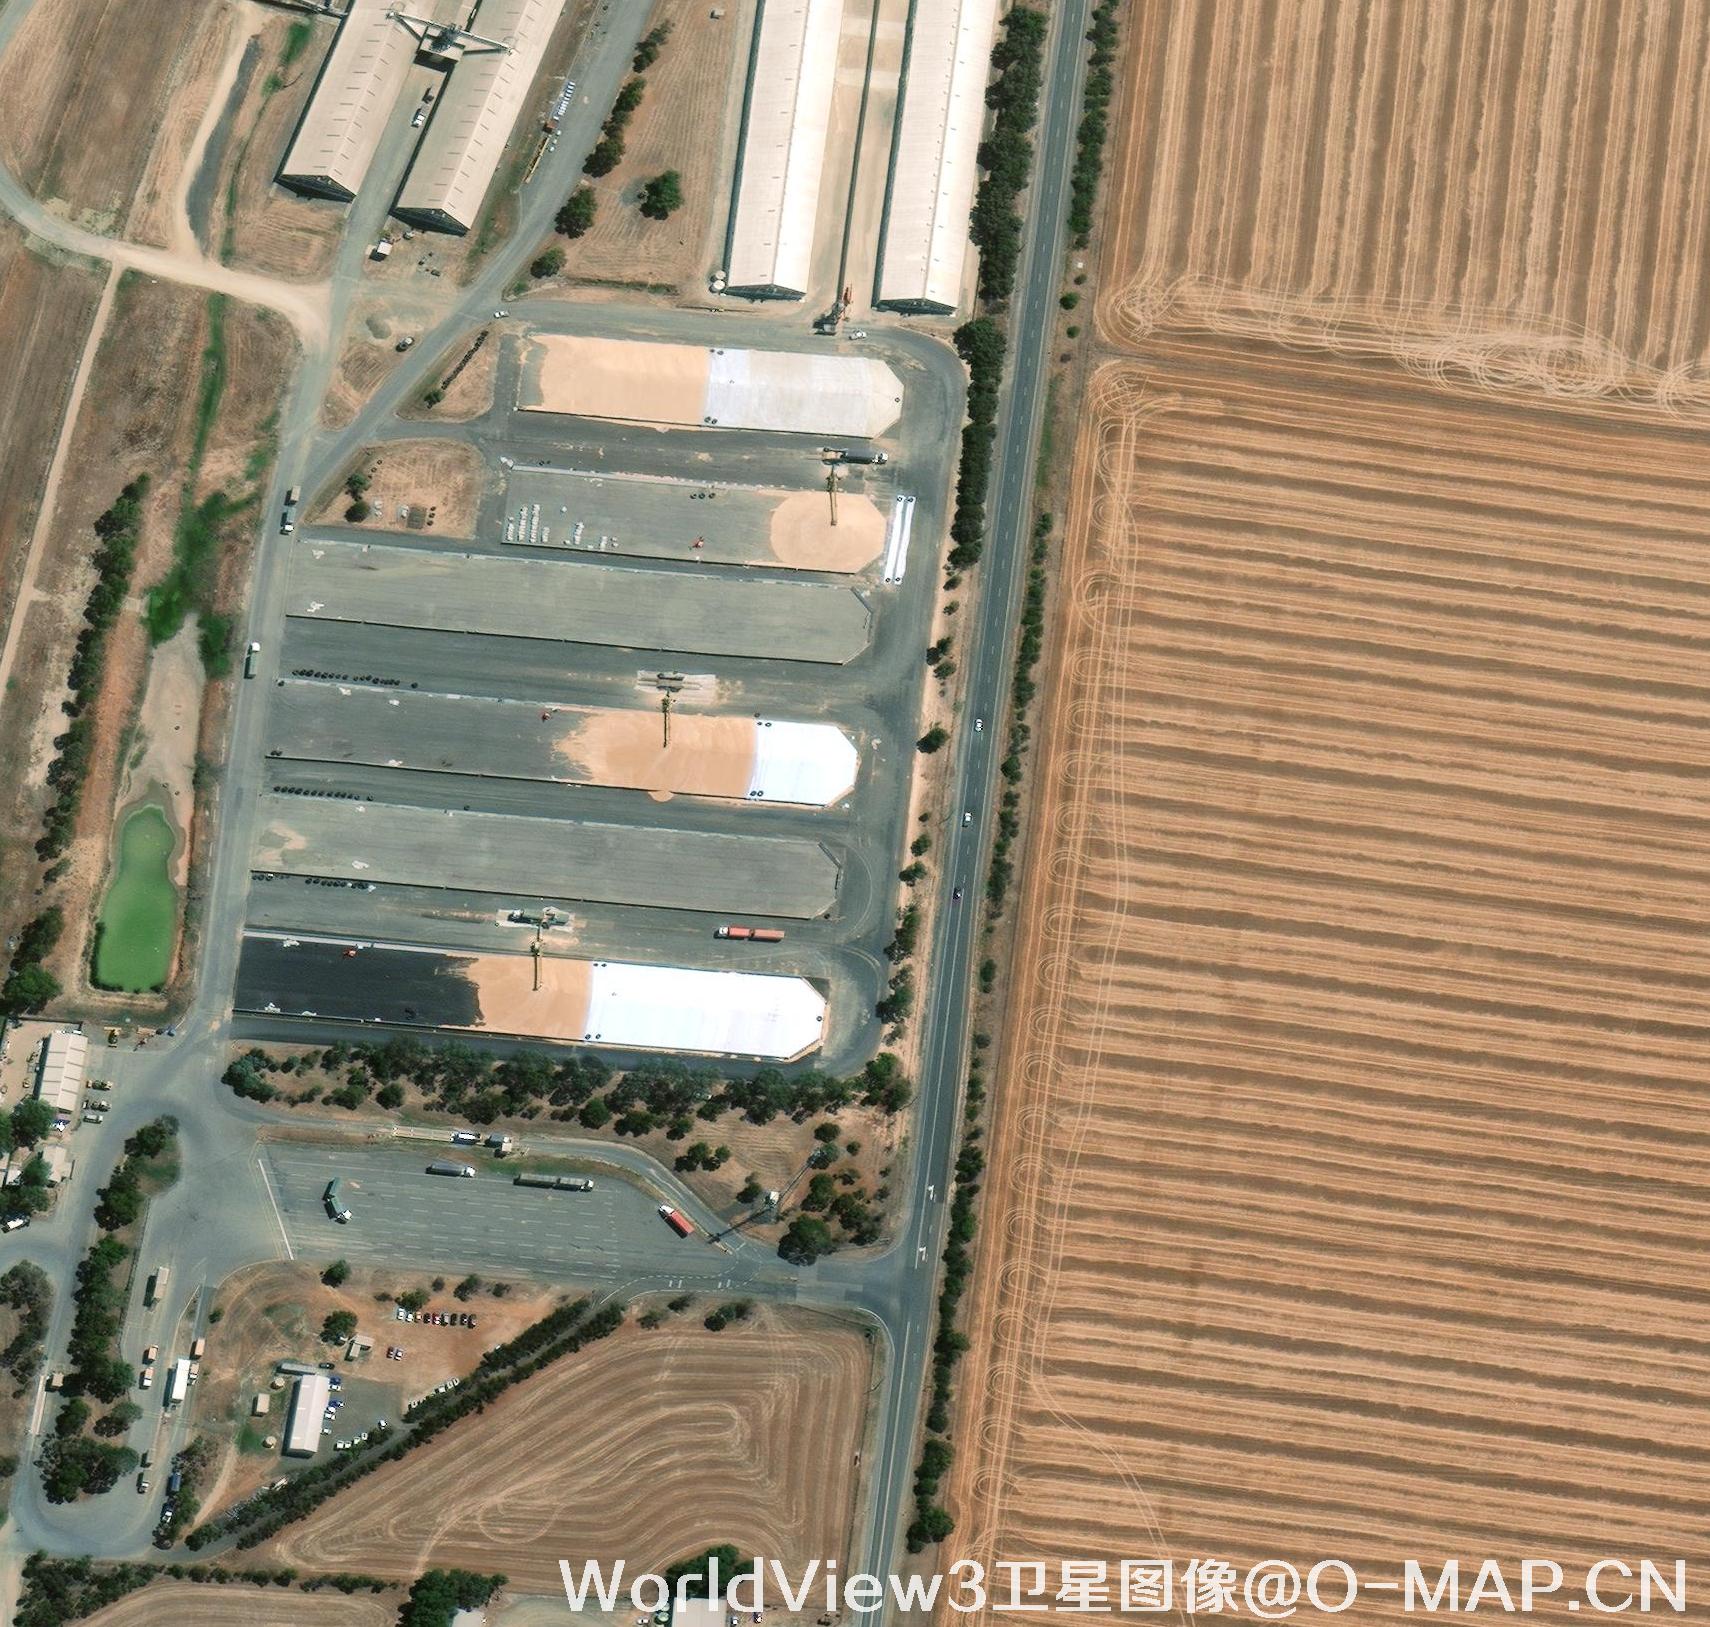 WorldView3卫星拍摄的城镇影像图